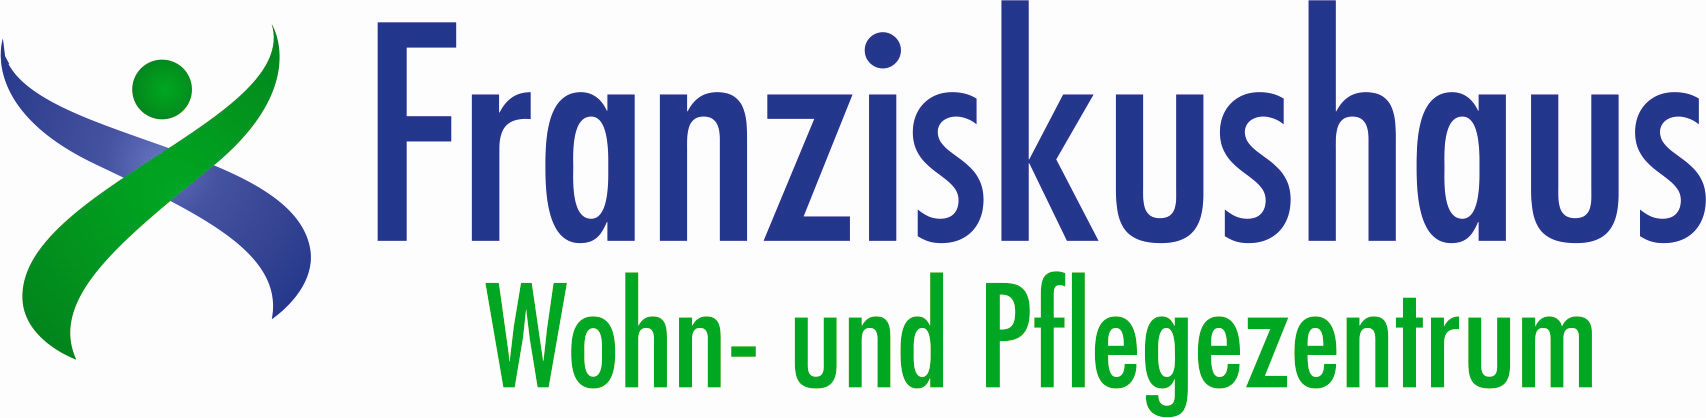 Logo: Franziskushaus